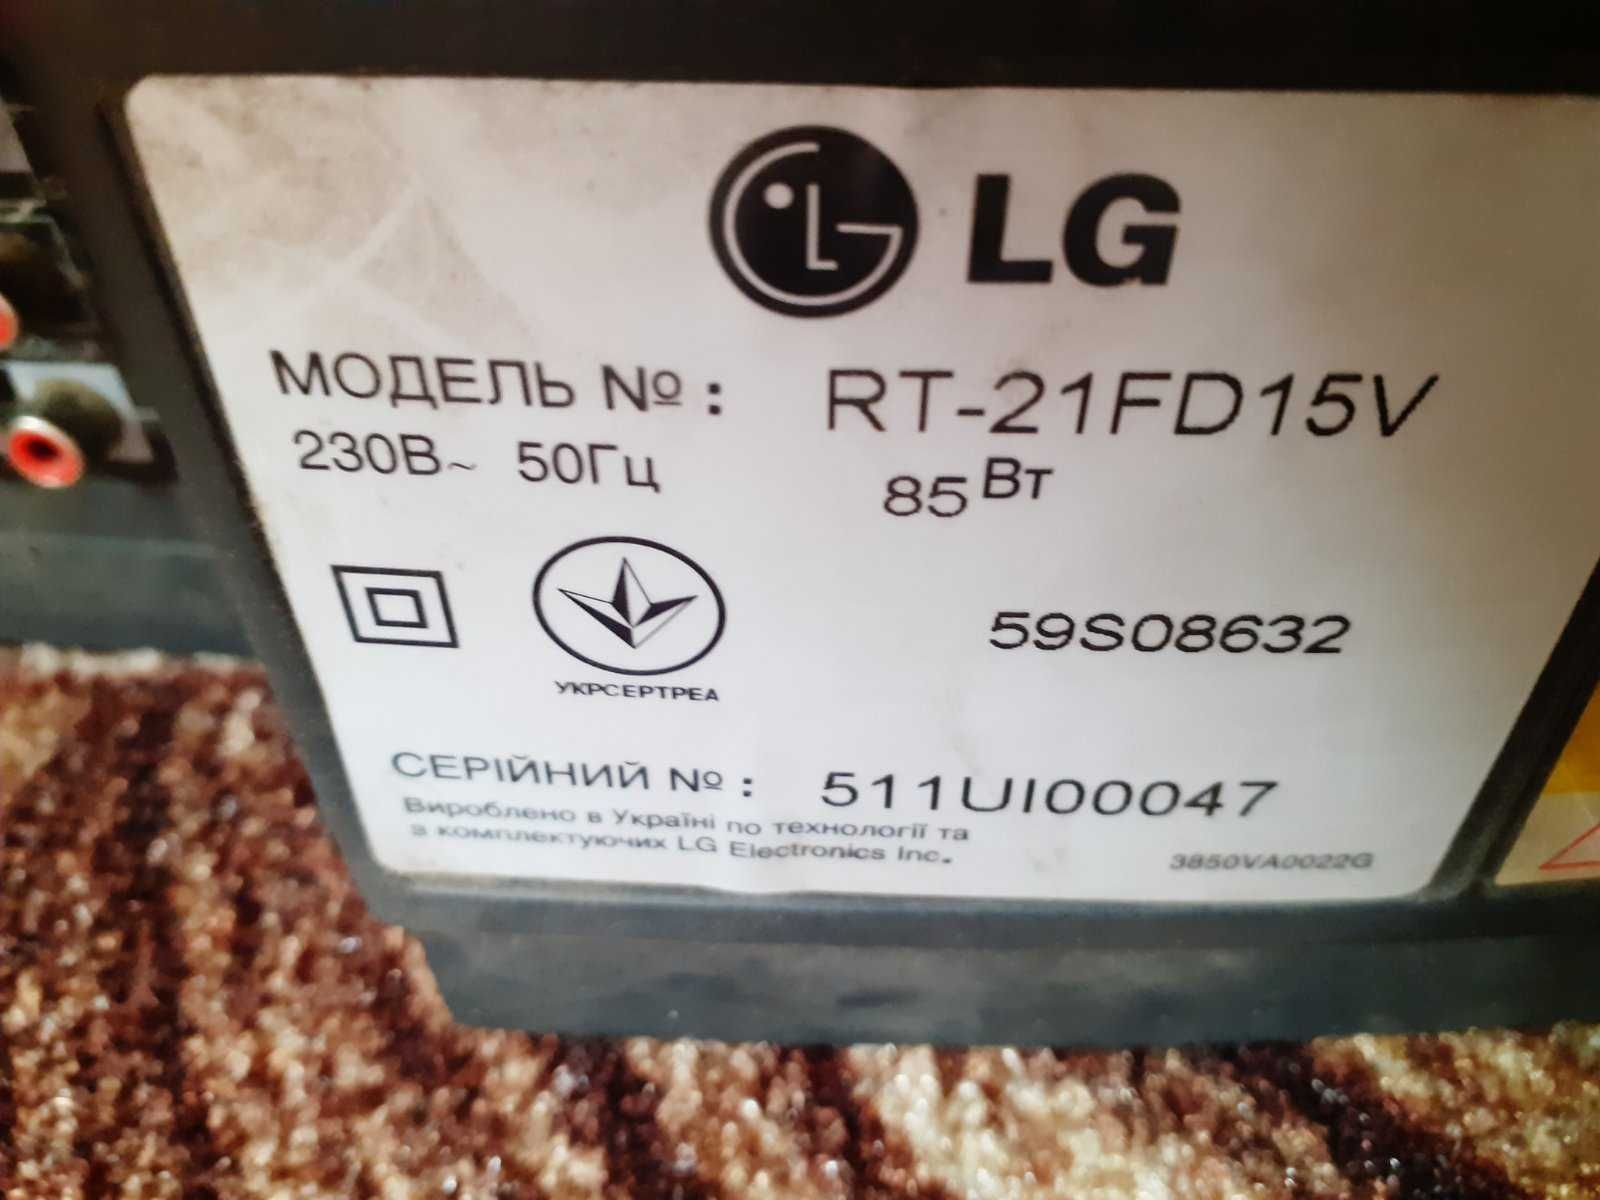 Кольоровий телевізор LG RT-21FD15V